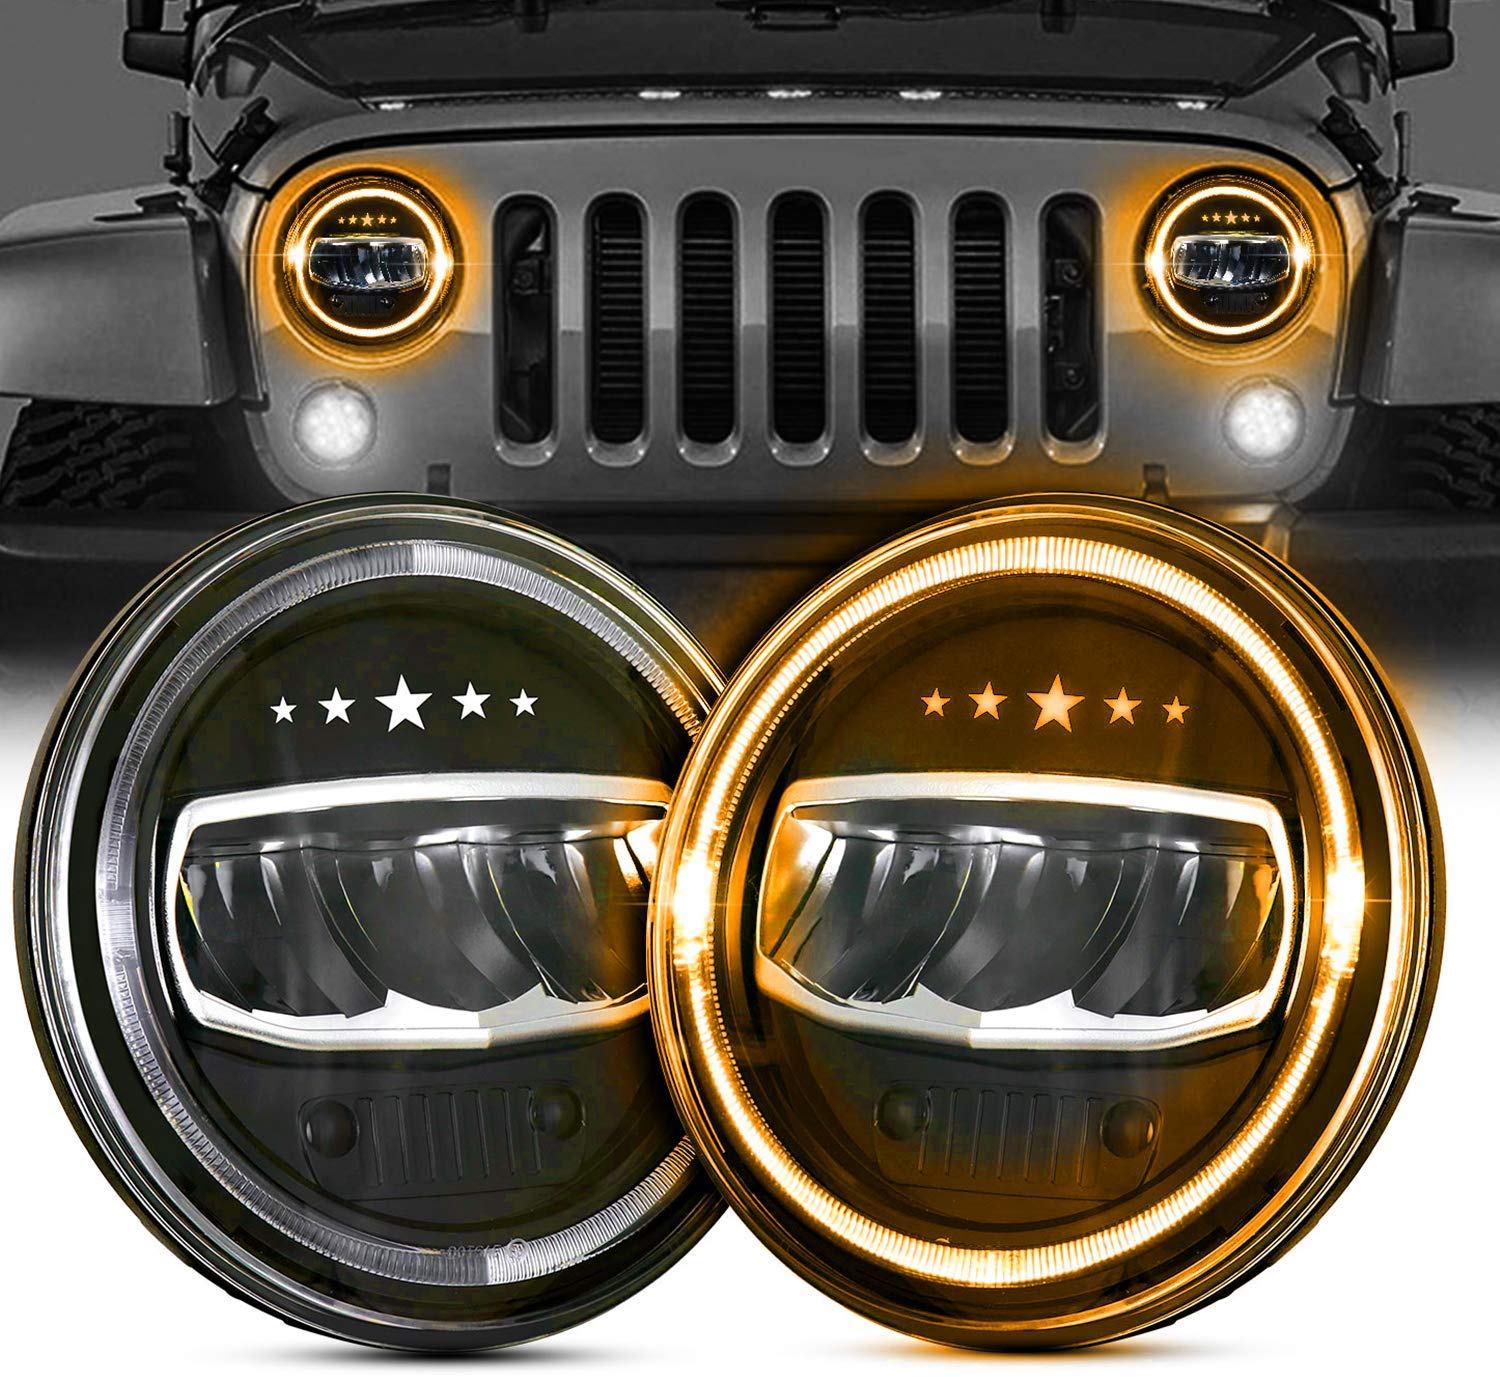 2X 7 Inch 80W Slim LED Headlight DRL Turn Signal for Jeep Wrangler JK LJ TJ